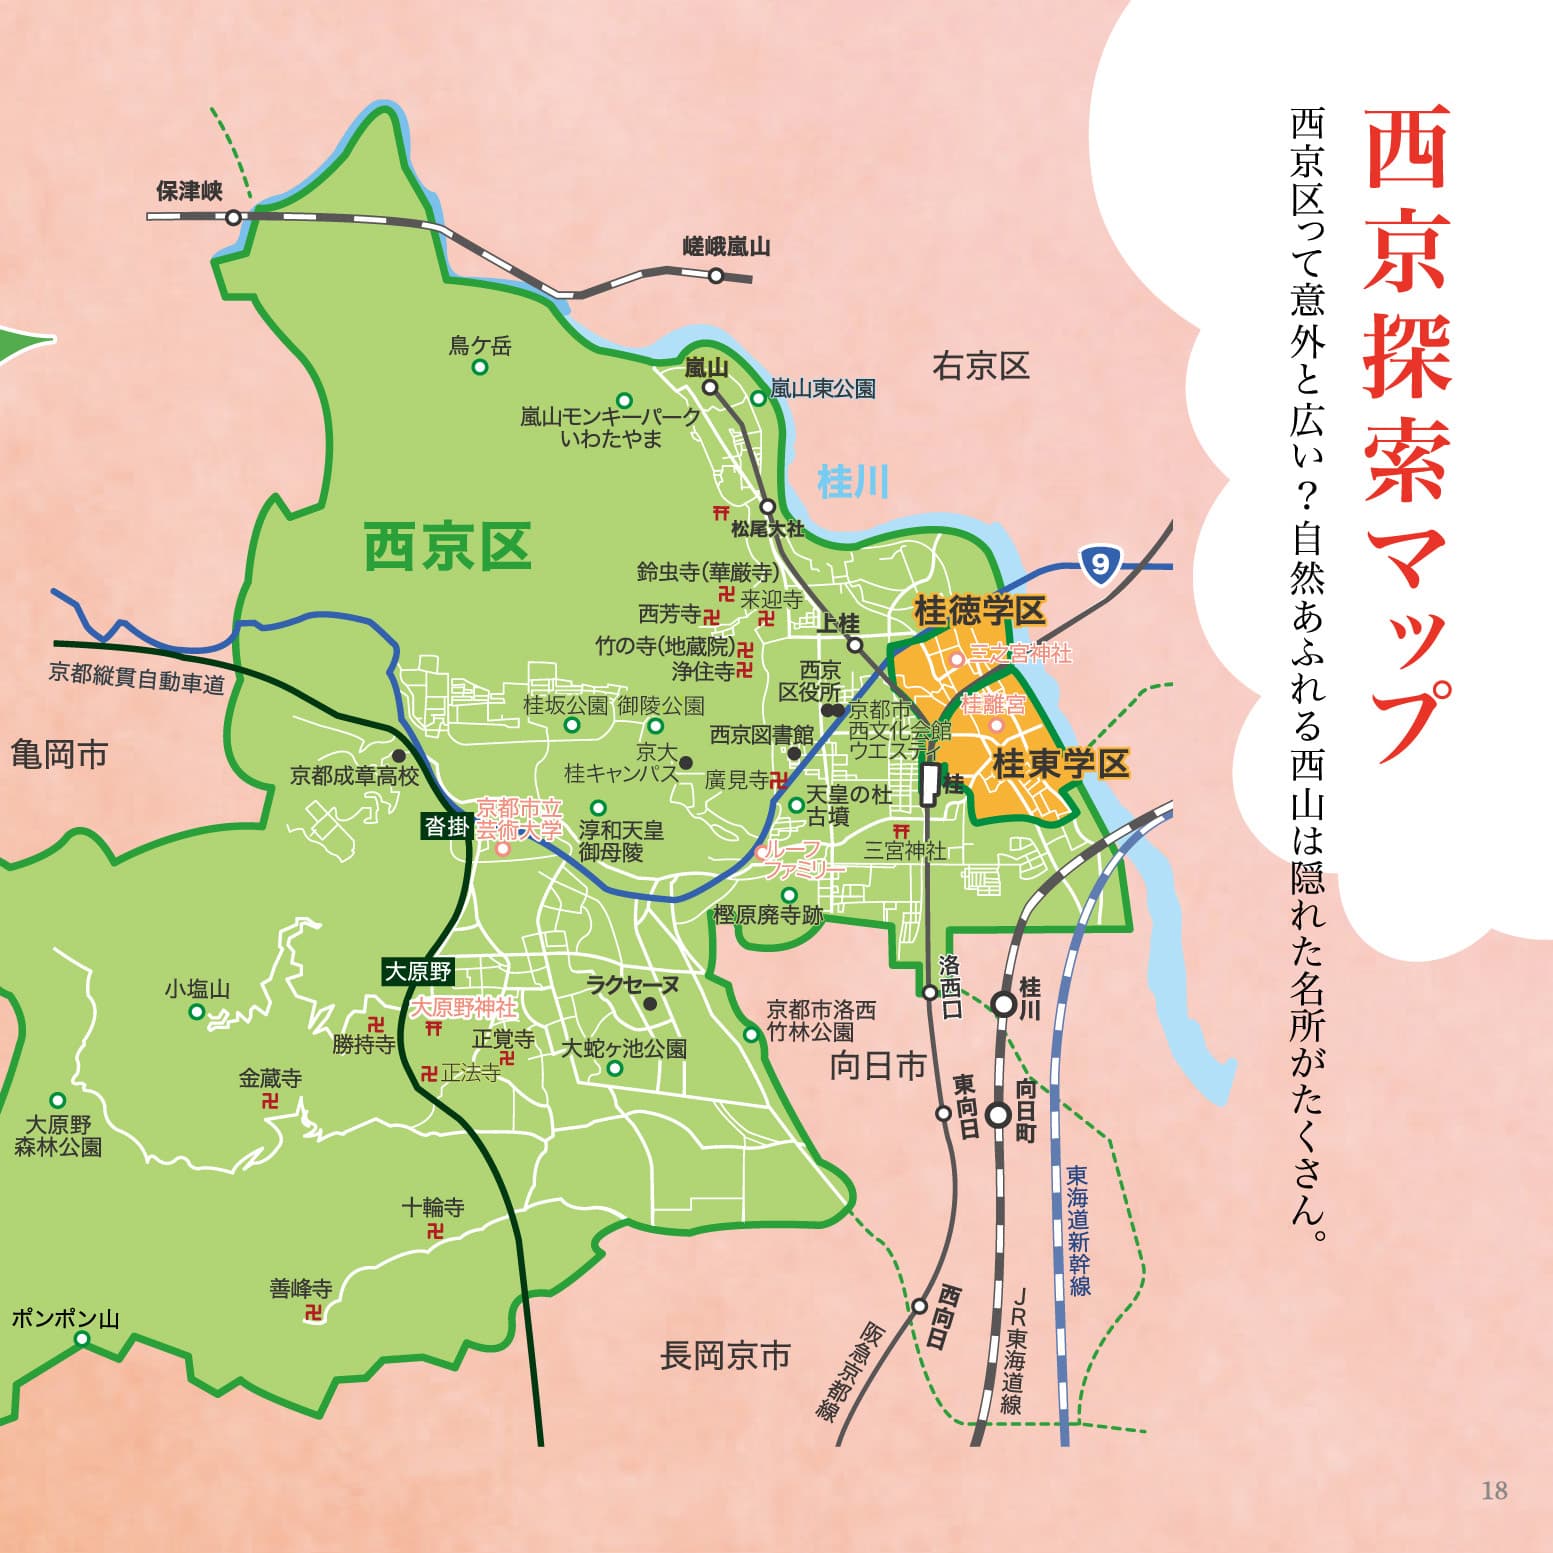 P.18-19 西京探索マップのイメージ